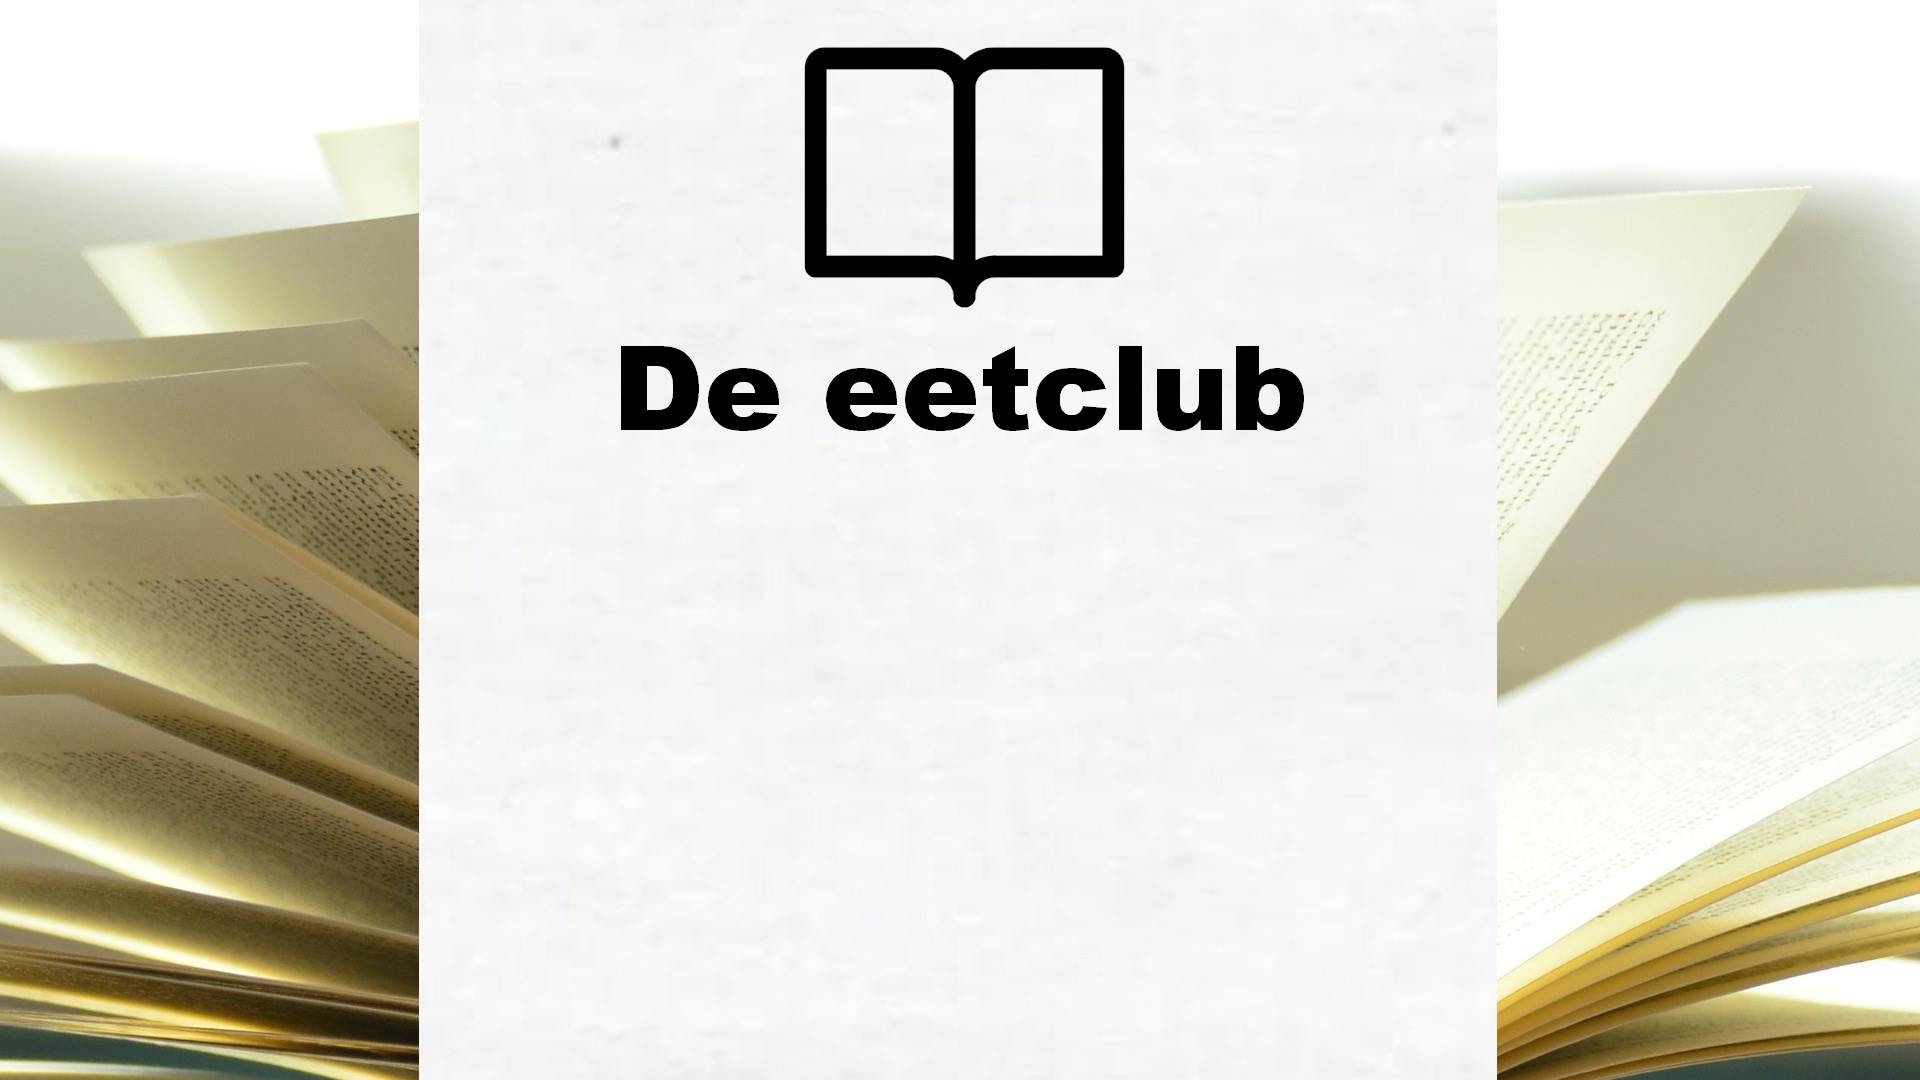 De eetclub – Boekrecensie